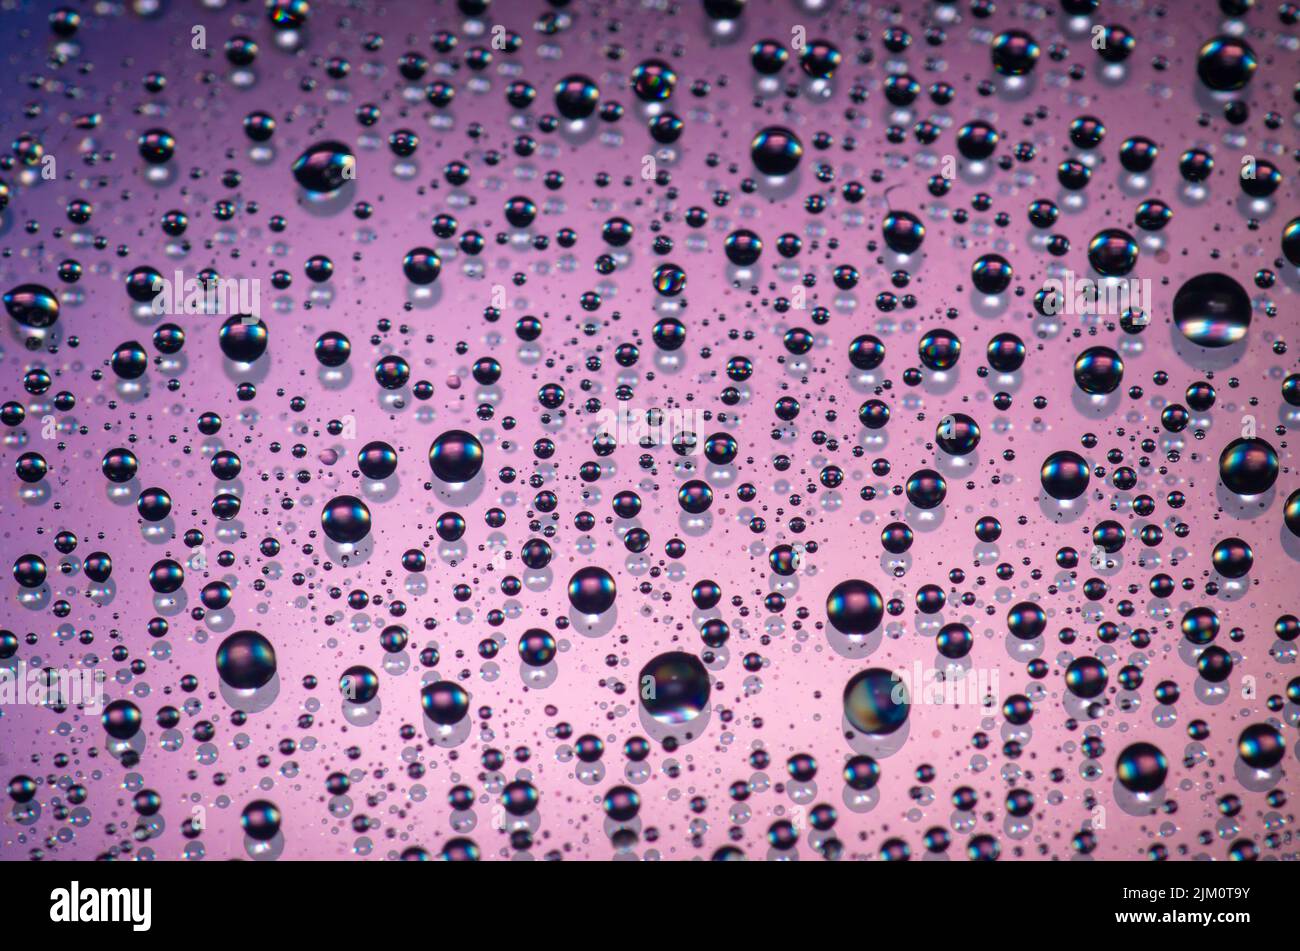 Eine Makroaufnahme von Wassertropfen auf einer violetten Oberfläche Stockfoto